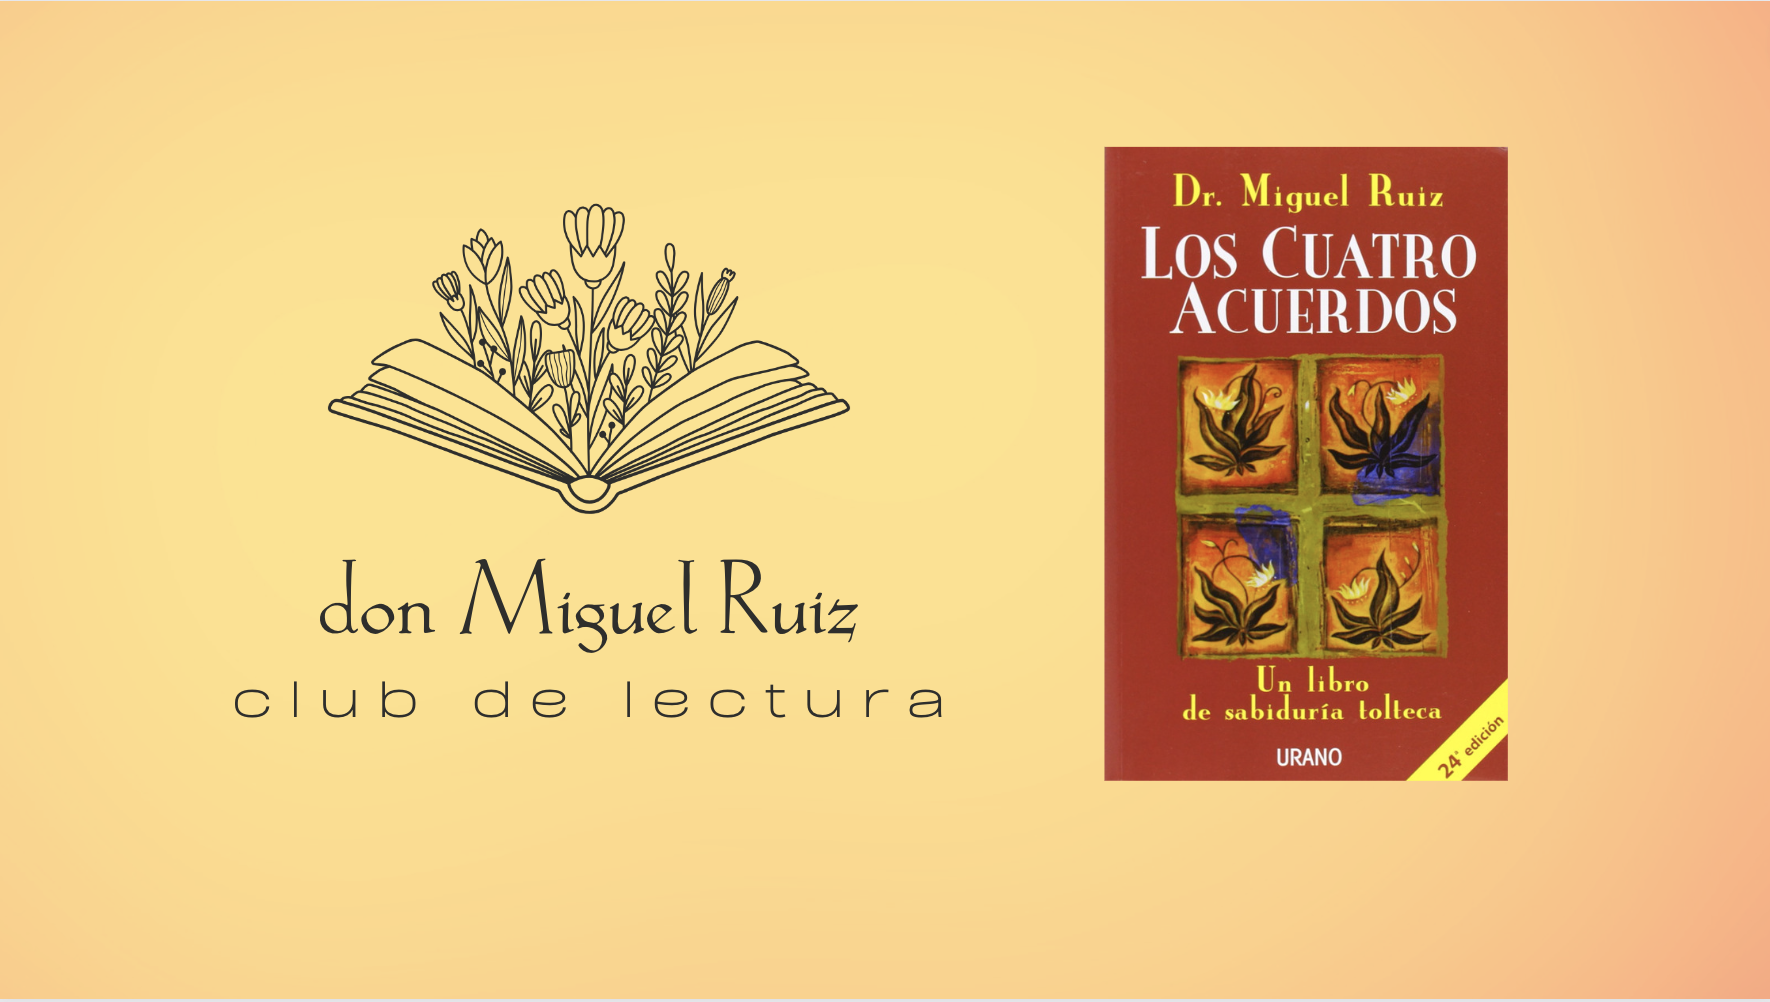 Club de Lectura Los Cuatro Acuerdos — don Miguel Ruiz